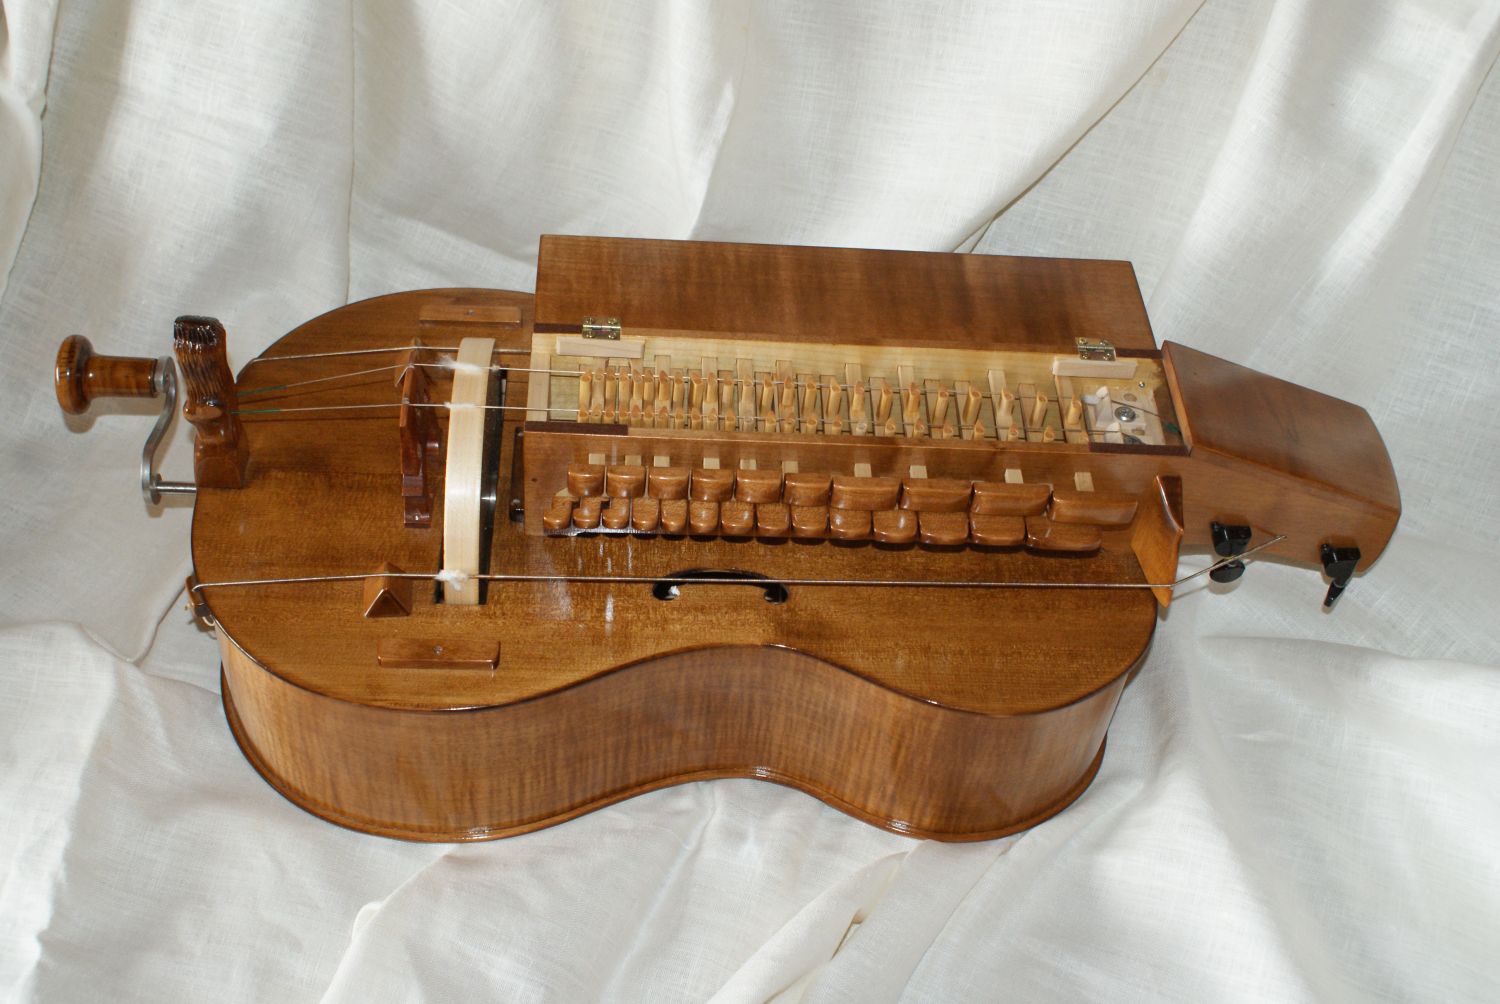 zdjęcie instrumentu pasterskiego z ekspozycji pasterskiej w Piwnicznej zdroju